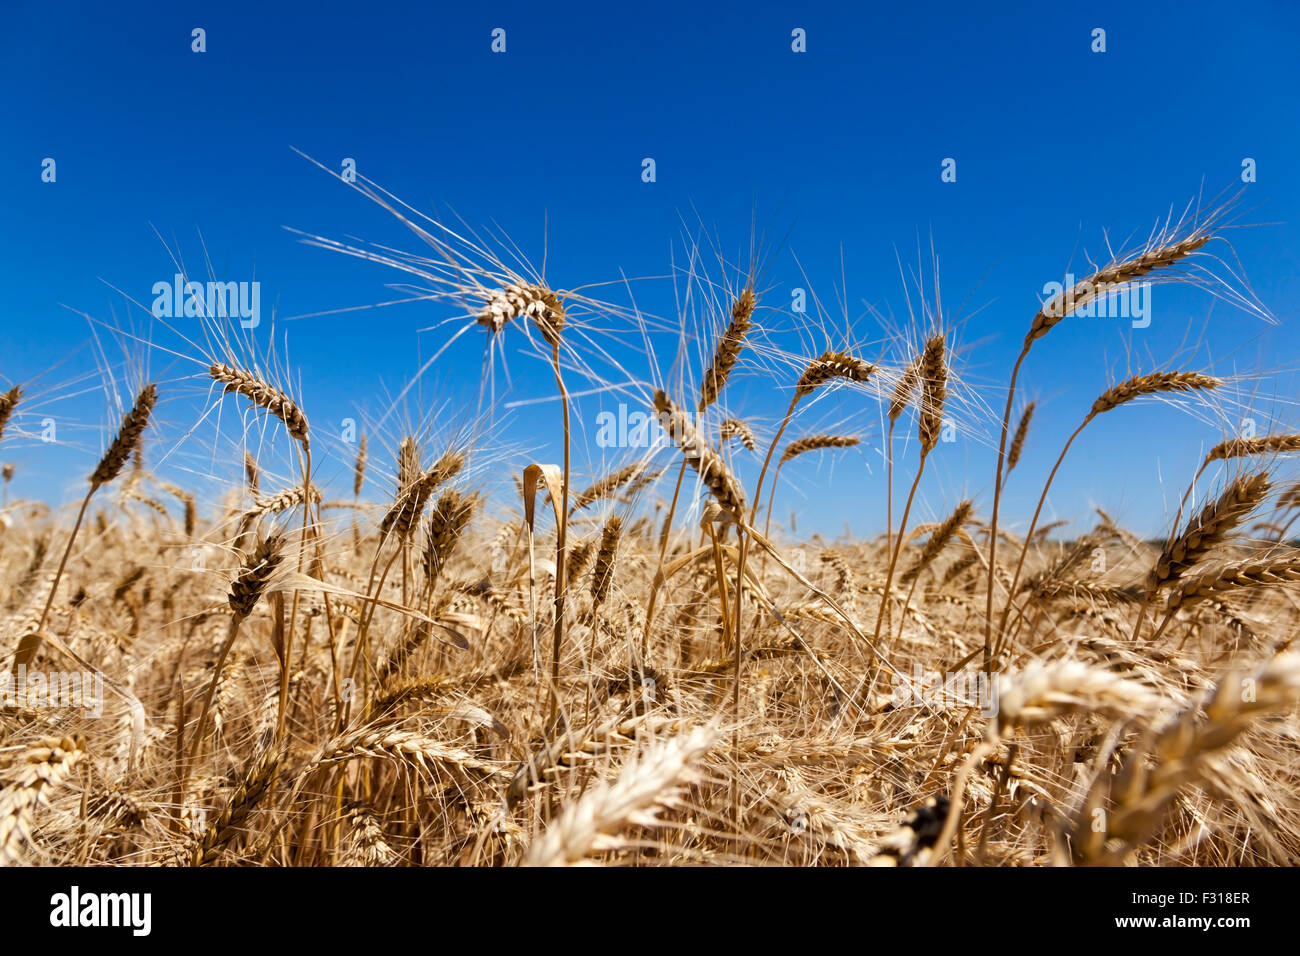 Les récoltes de blé dans un champ Banque D'Images